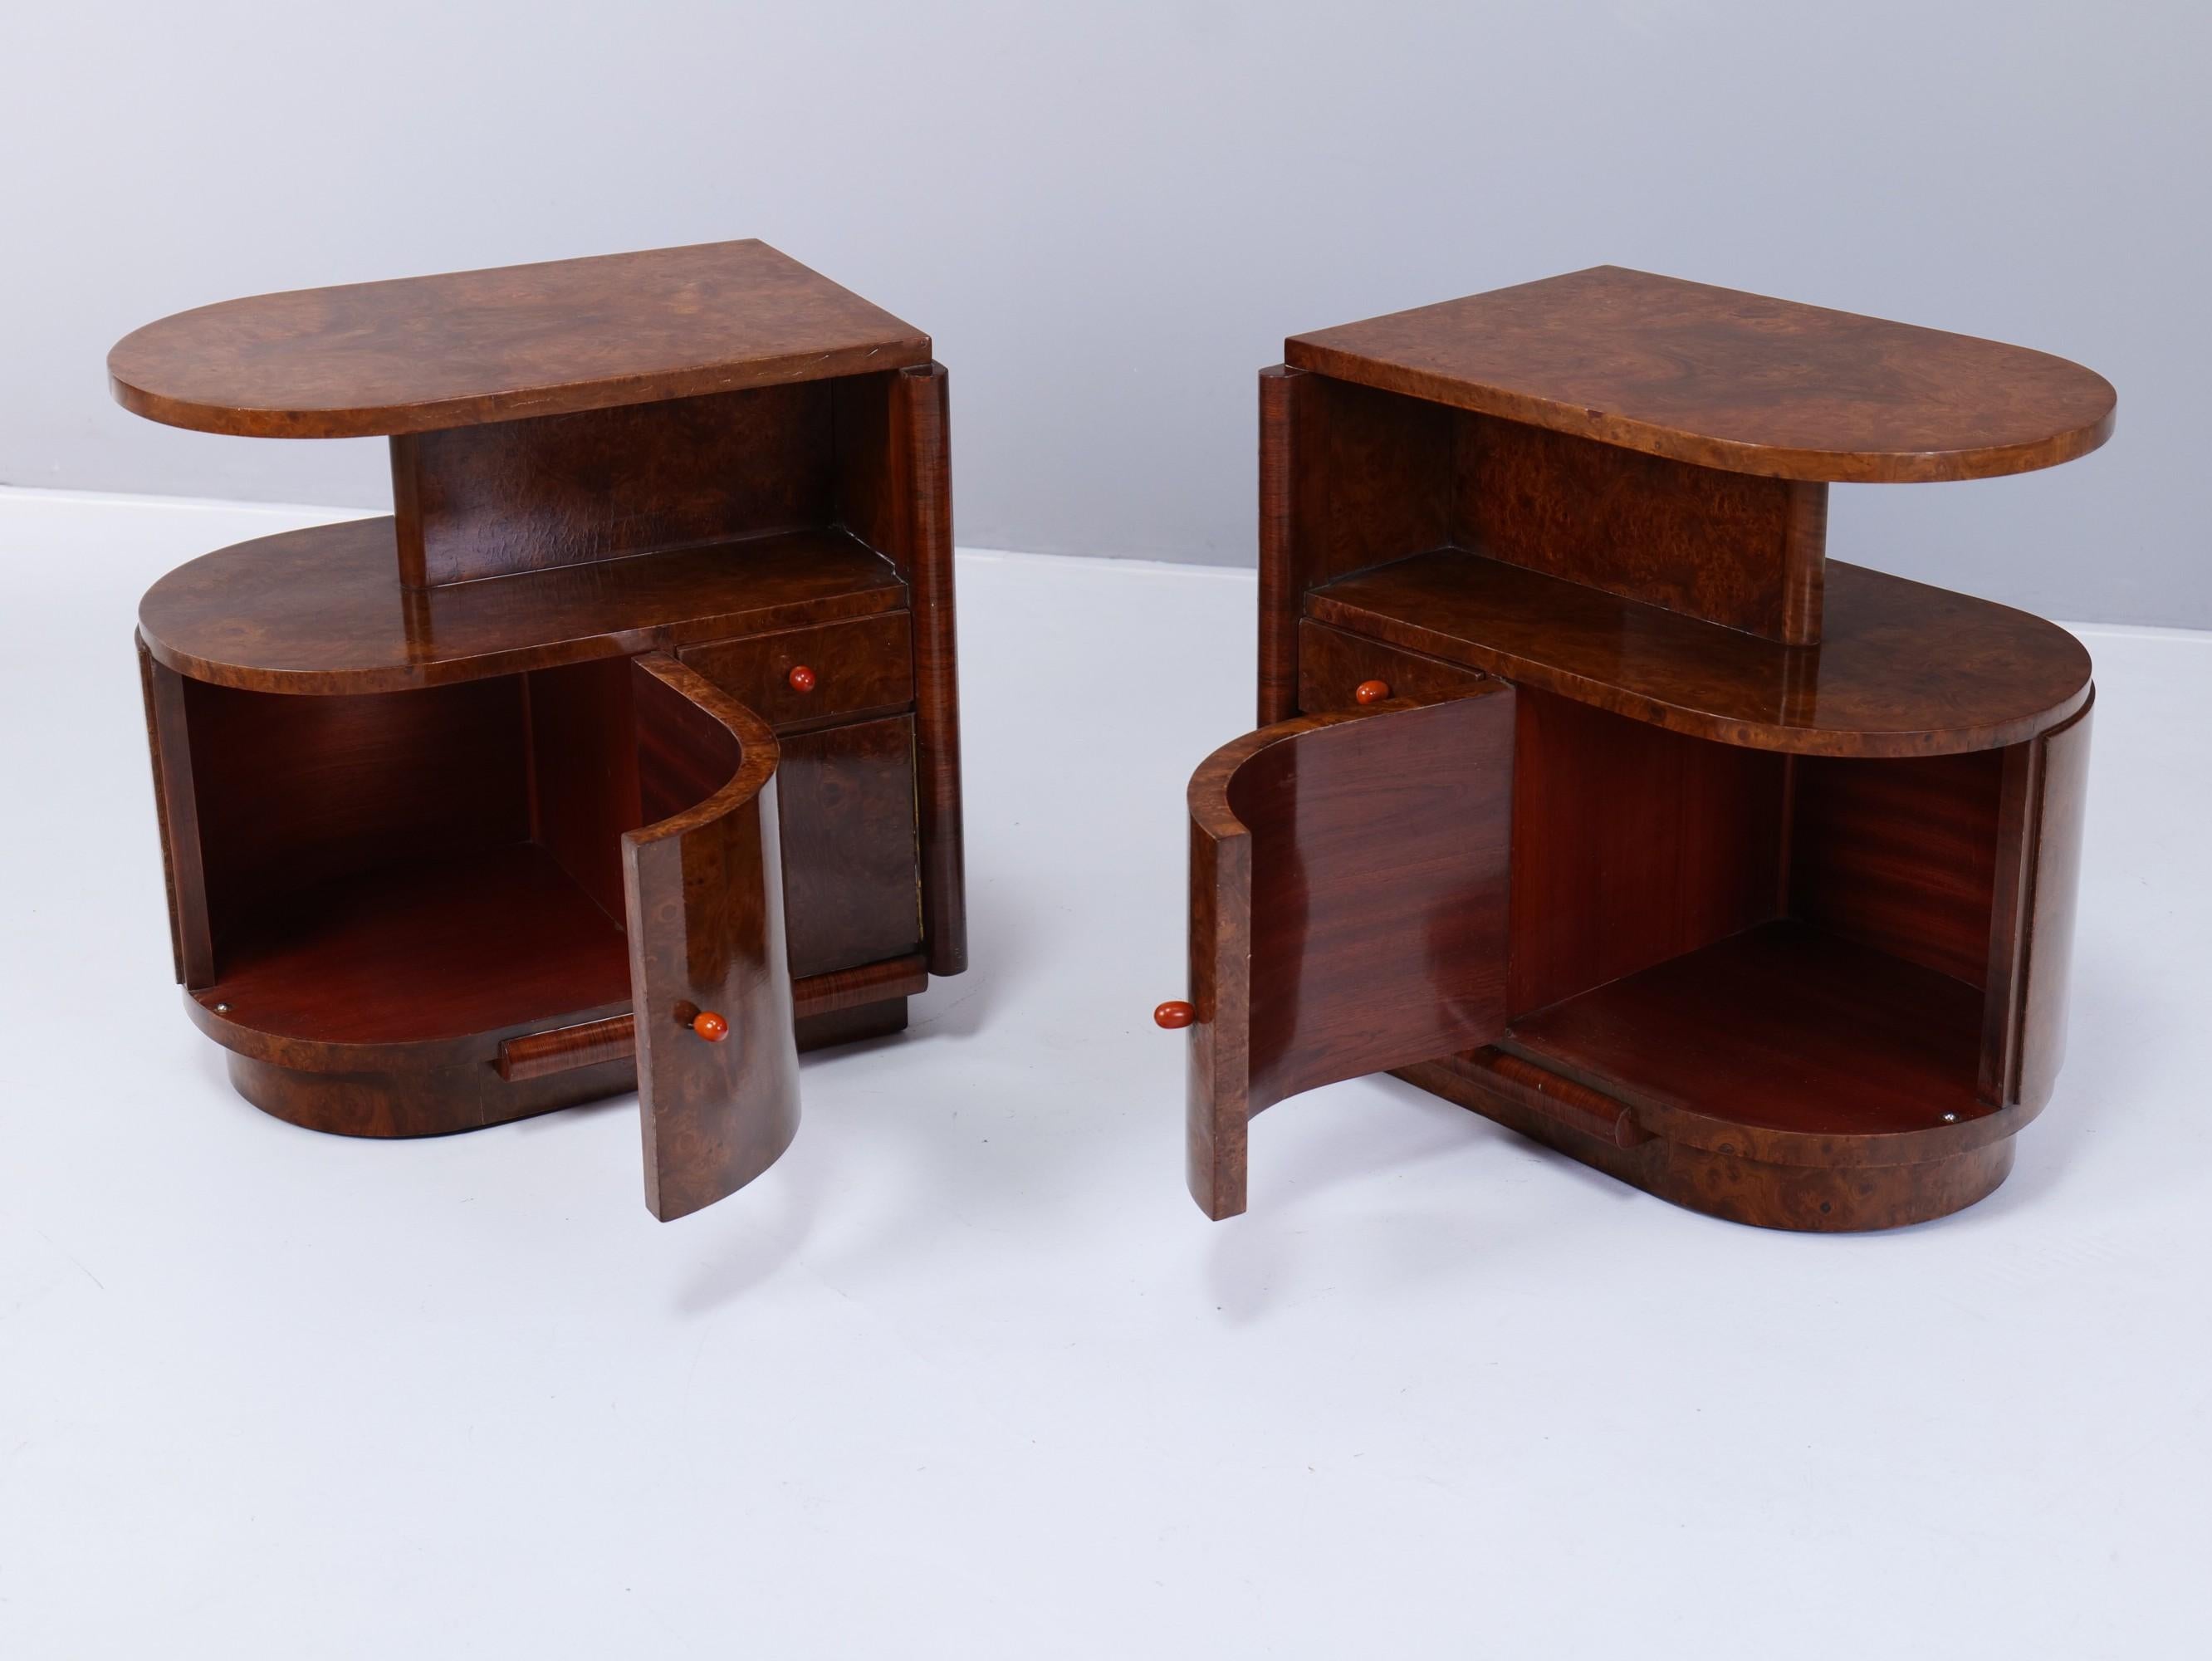 Polished Art Deco Bedside Tables in Ash and Burl Wood, Set of 2 Produkt-überblick Artikel